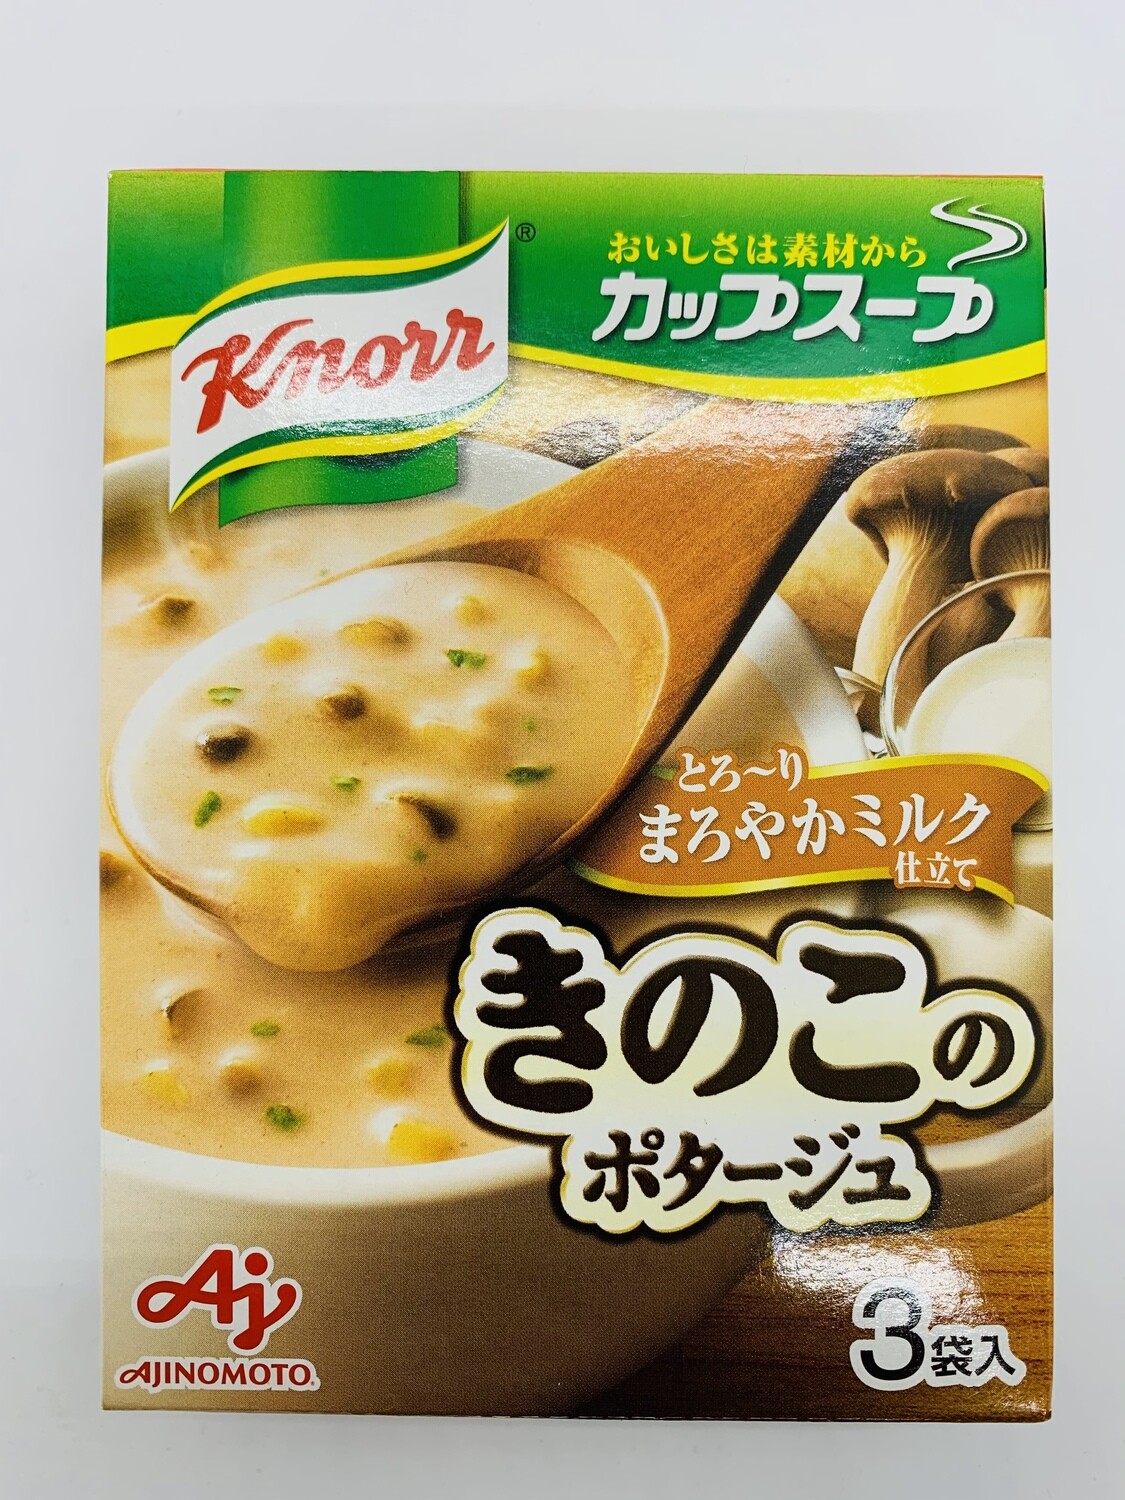 KNORR Cup Soup Kinoko Mushroom